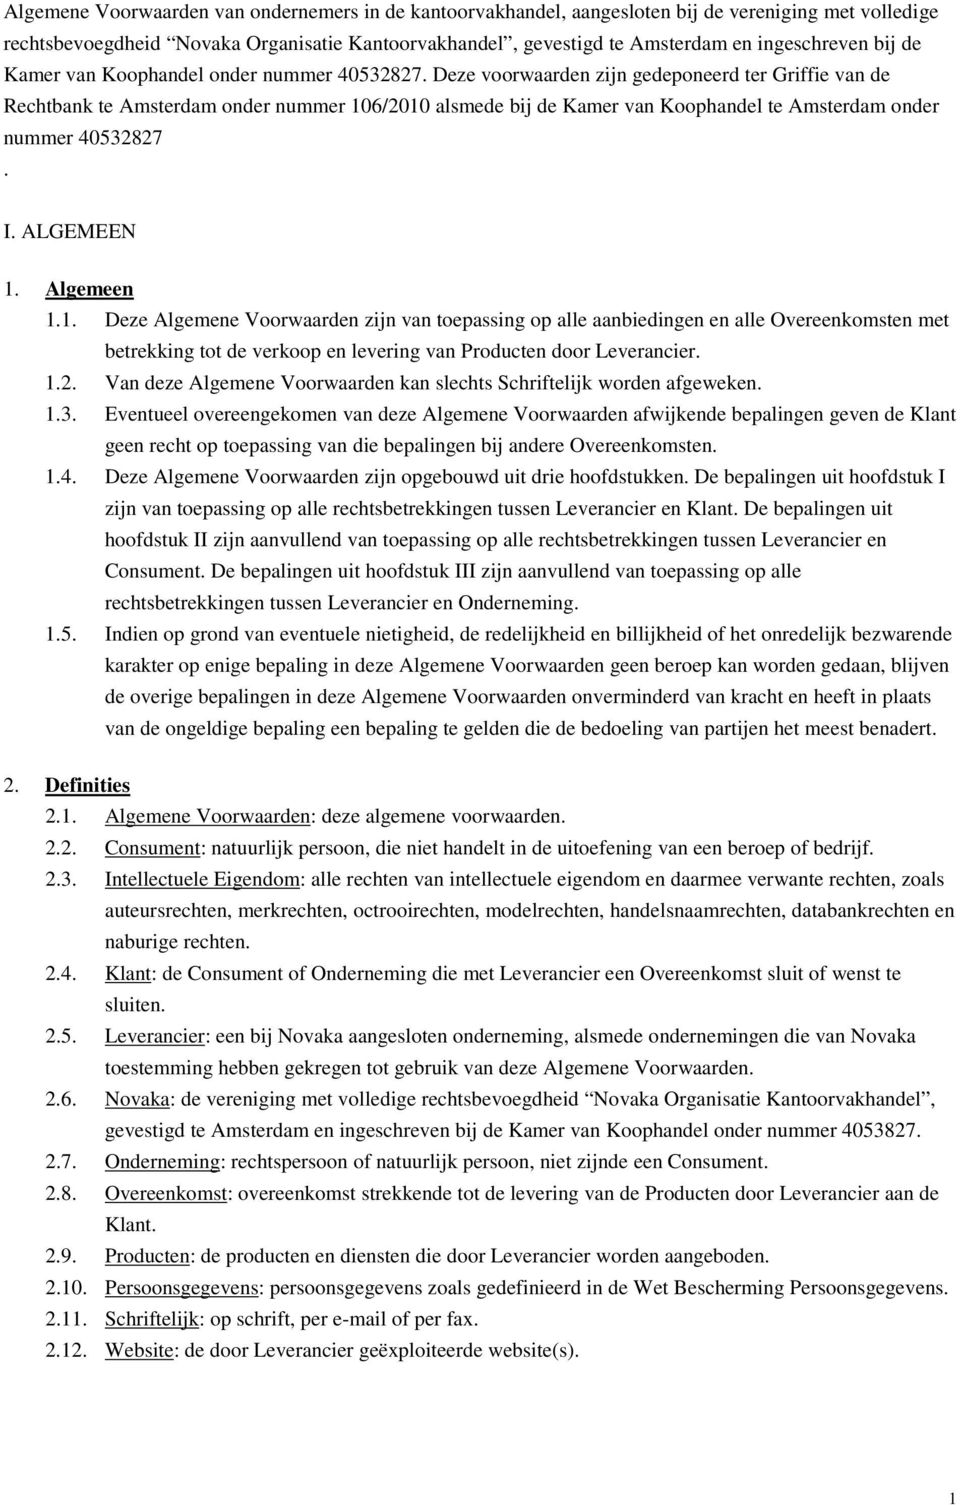 Deze voorwaarden zijn gedeponeerd ter Griffie van de Rechtbank te Amsterdam onder nummer 10